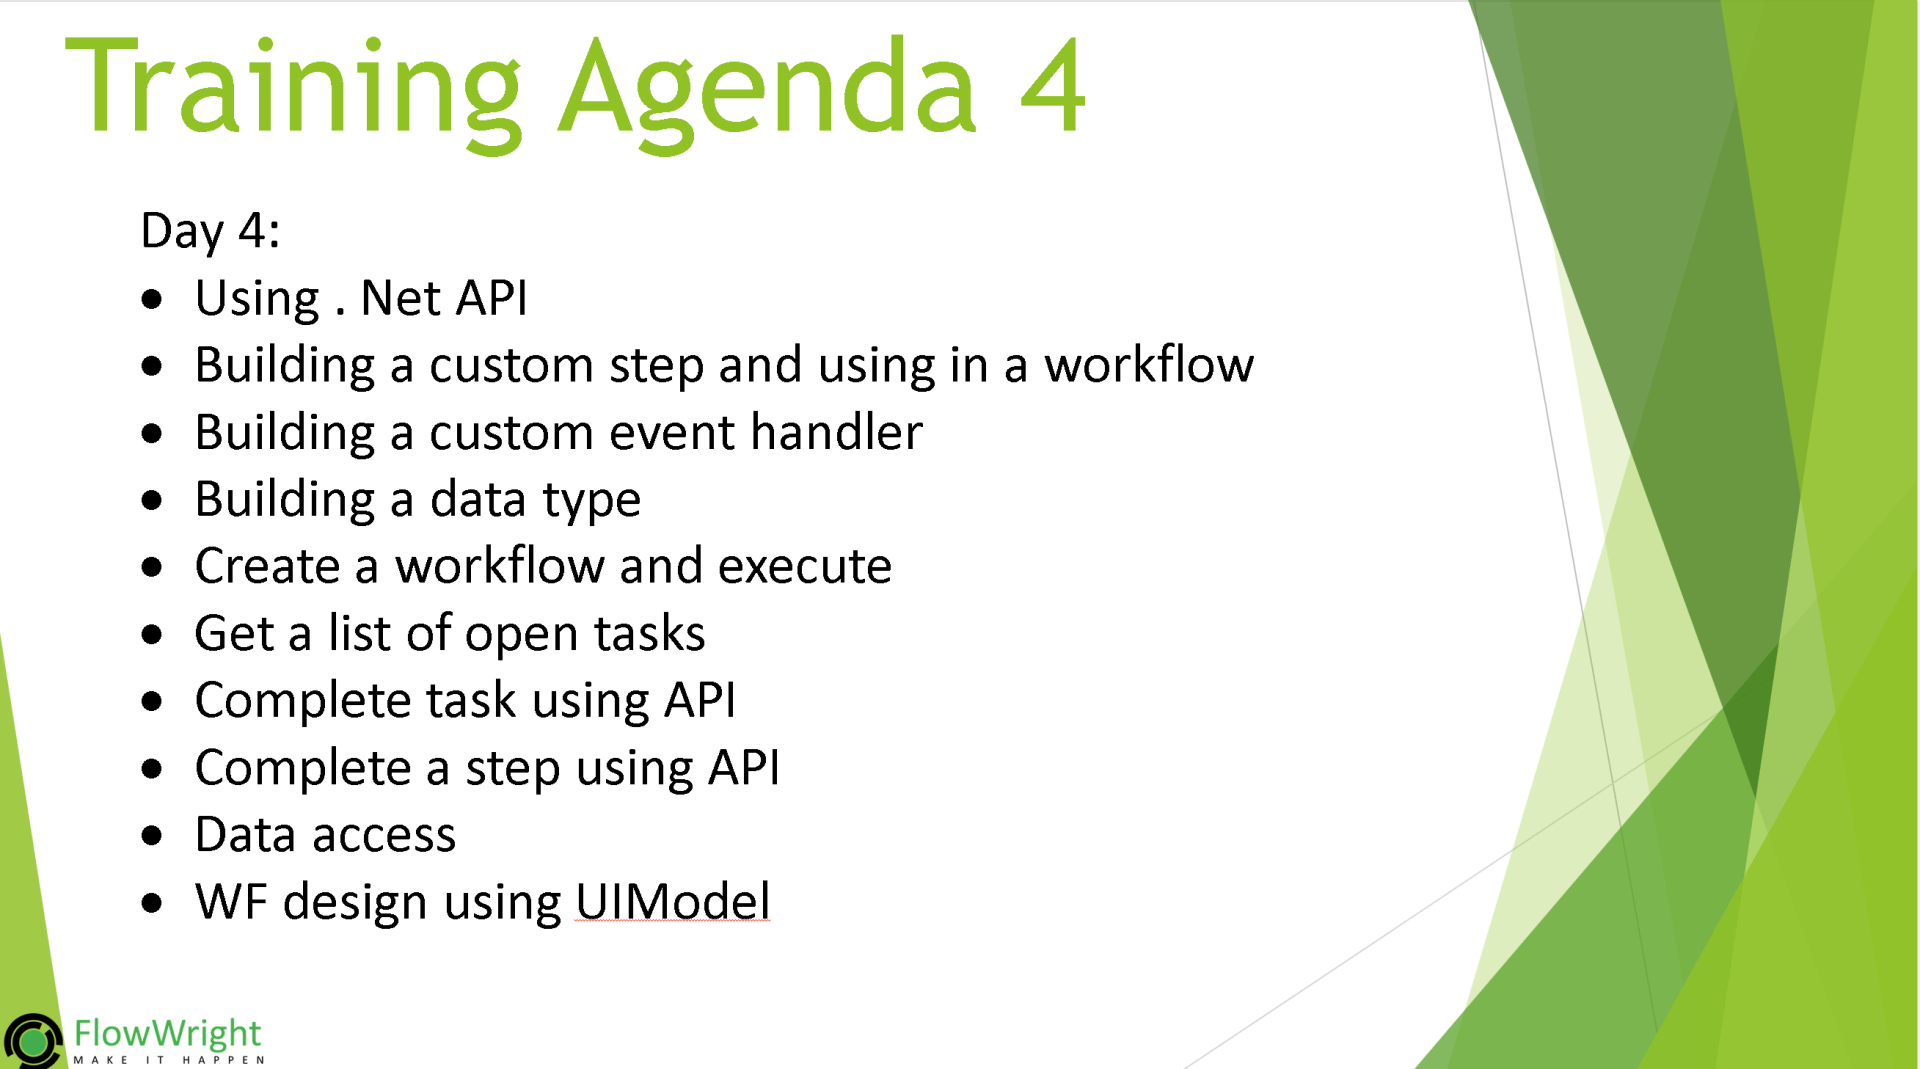 A training agenda for day 4 includes using net api